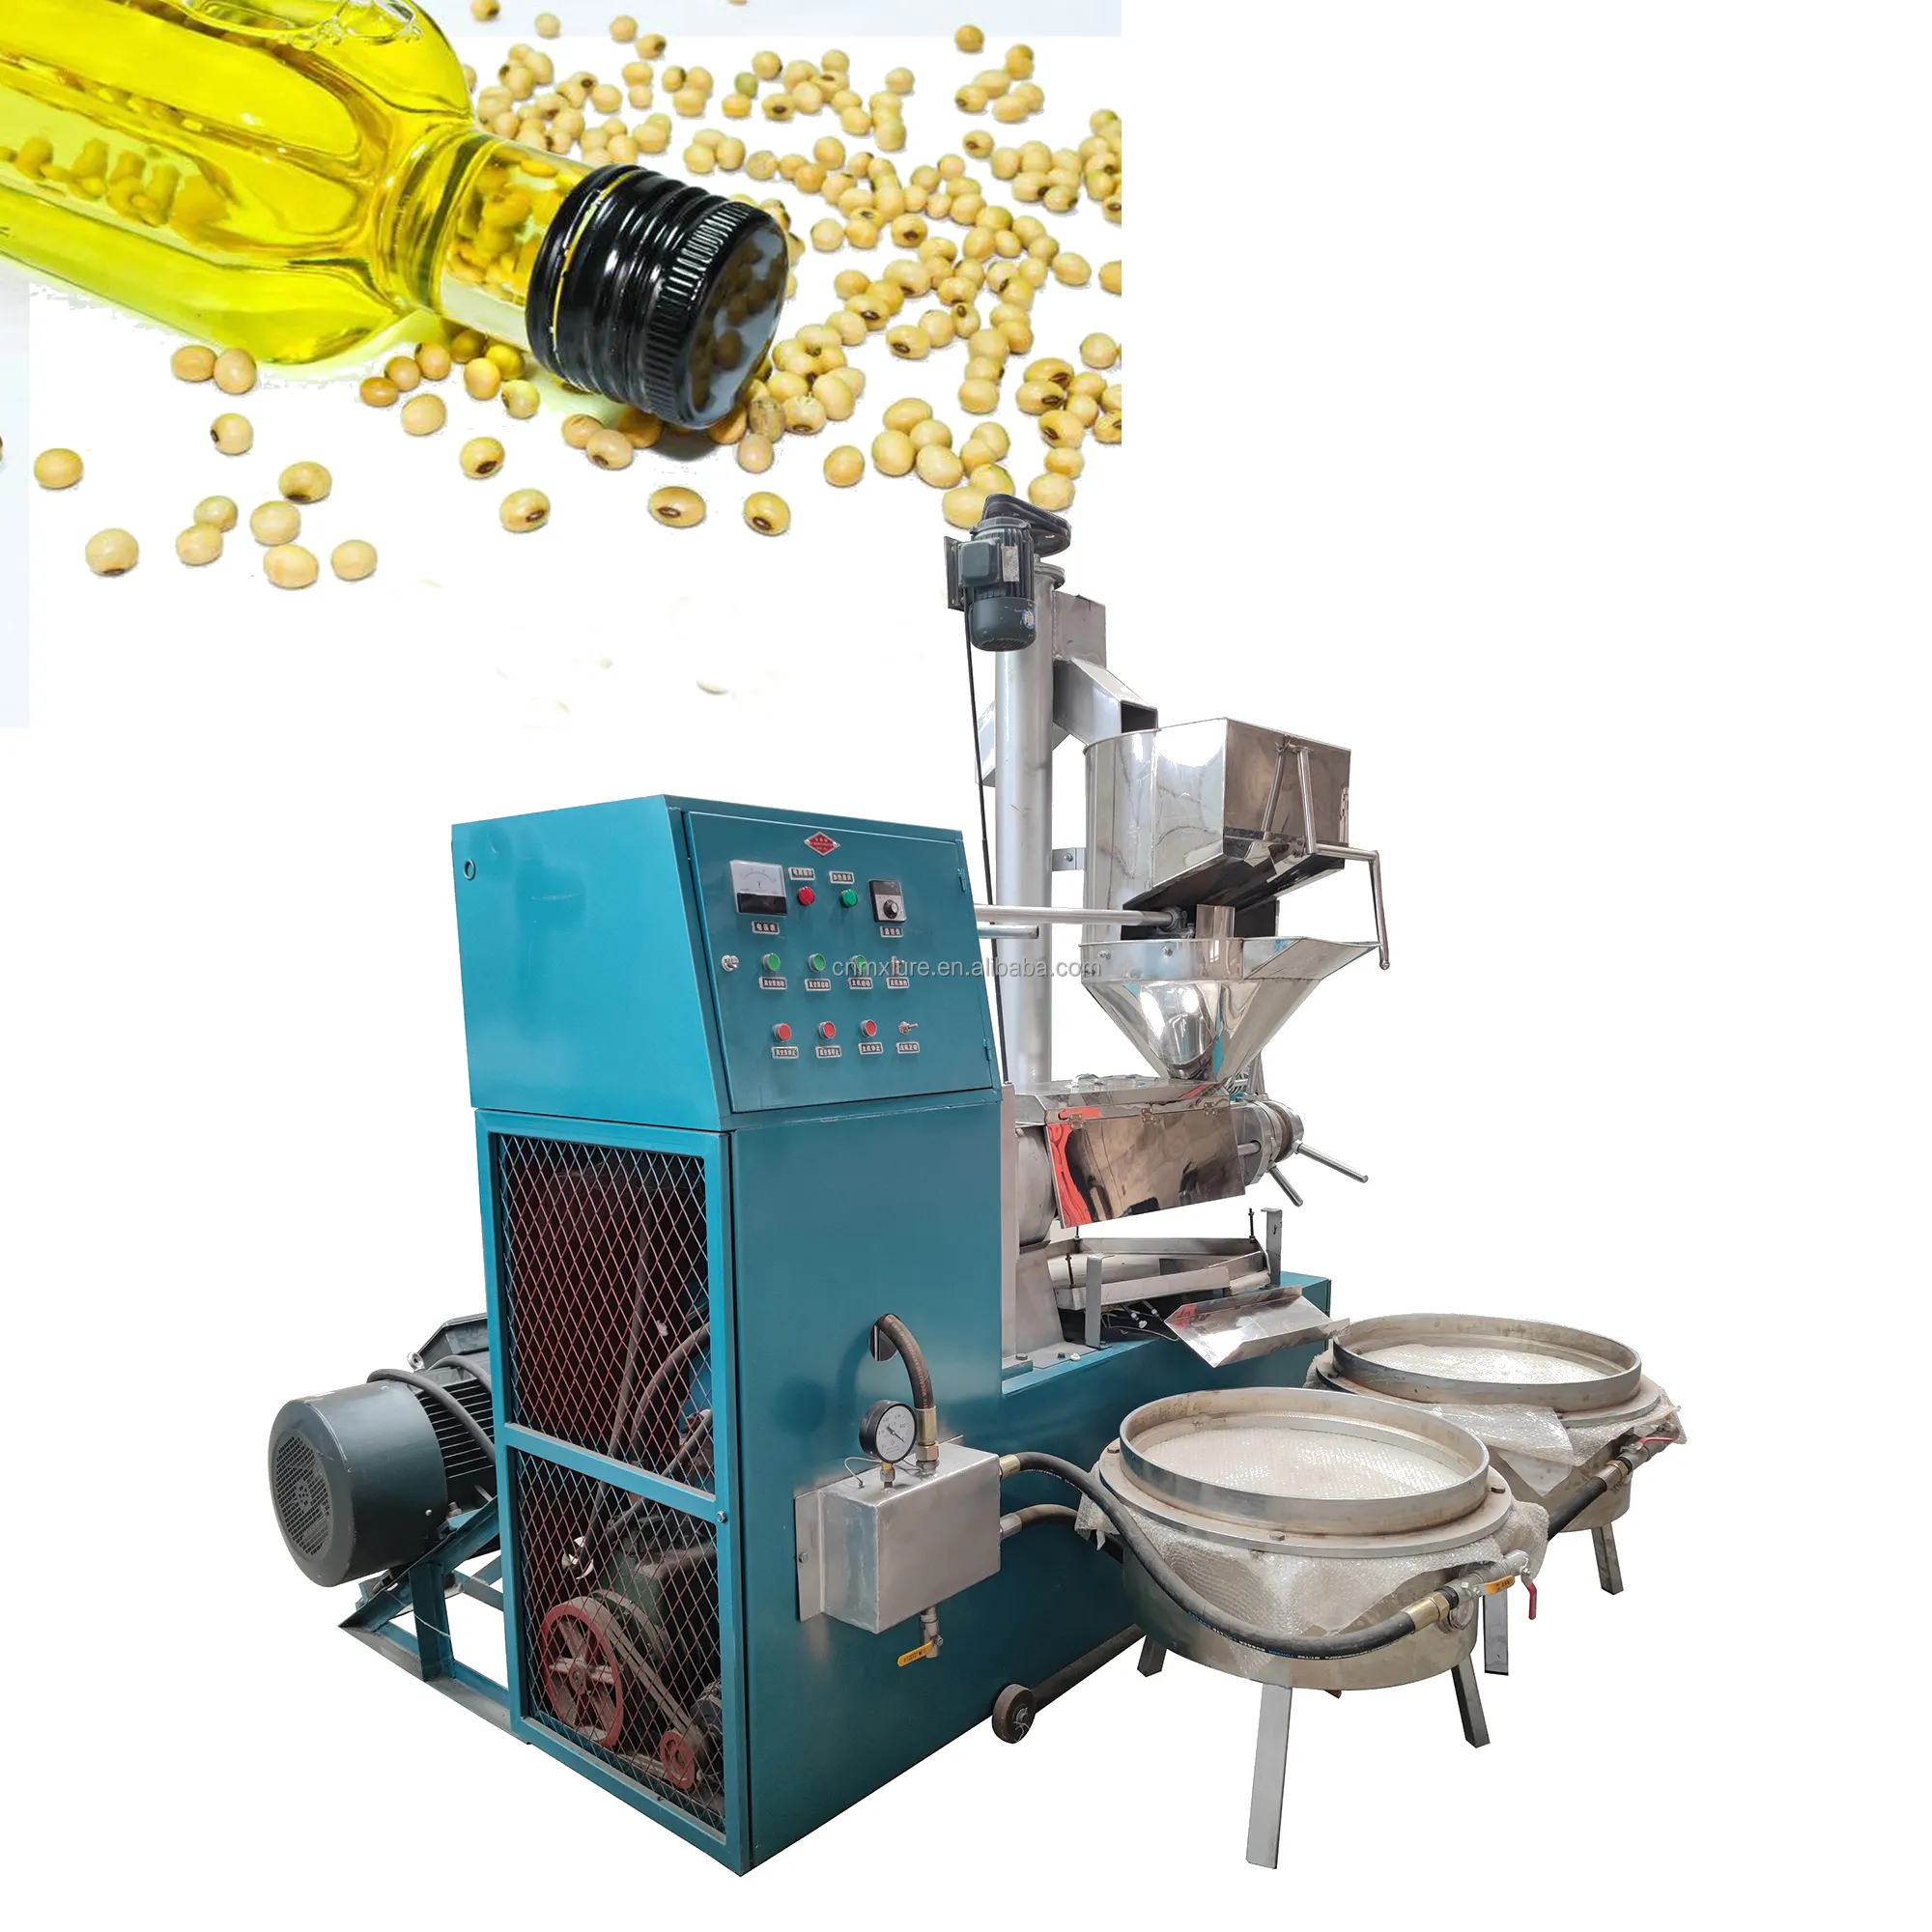 Präzisions-Hydrauliköl presse Stanz maschine, Palmkernöl-Auswurf schnecken presse und Olivenöl presse Industrie maschine